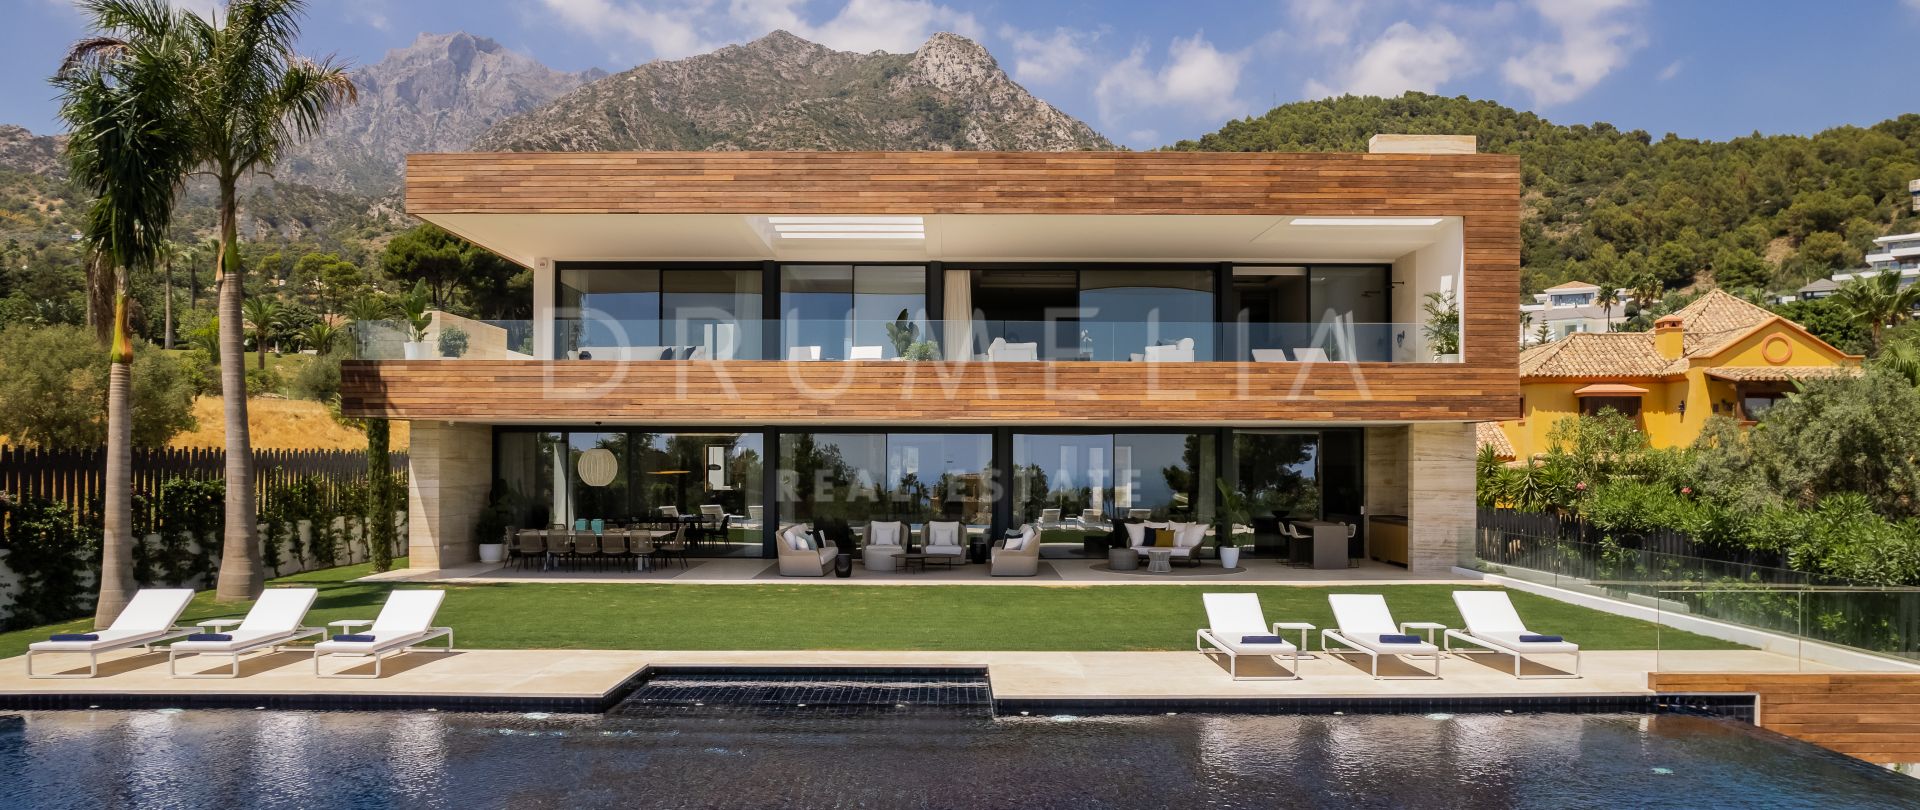 Gran villa a estrenar con vistas espectaculares en Cascada de Camoján, Milla de Oro de Marbella.